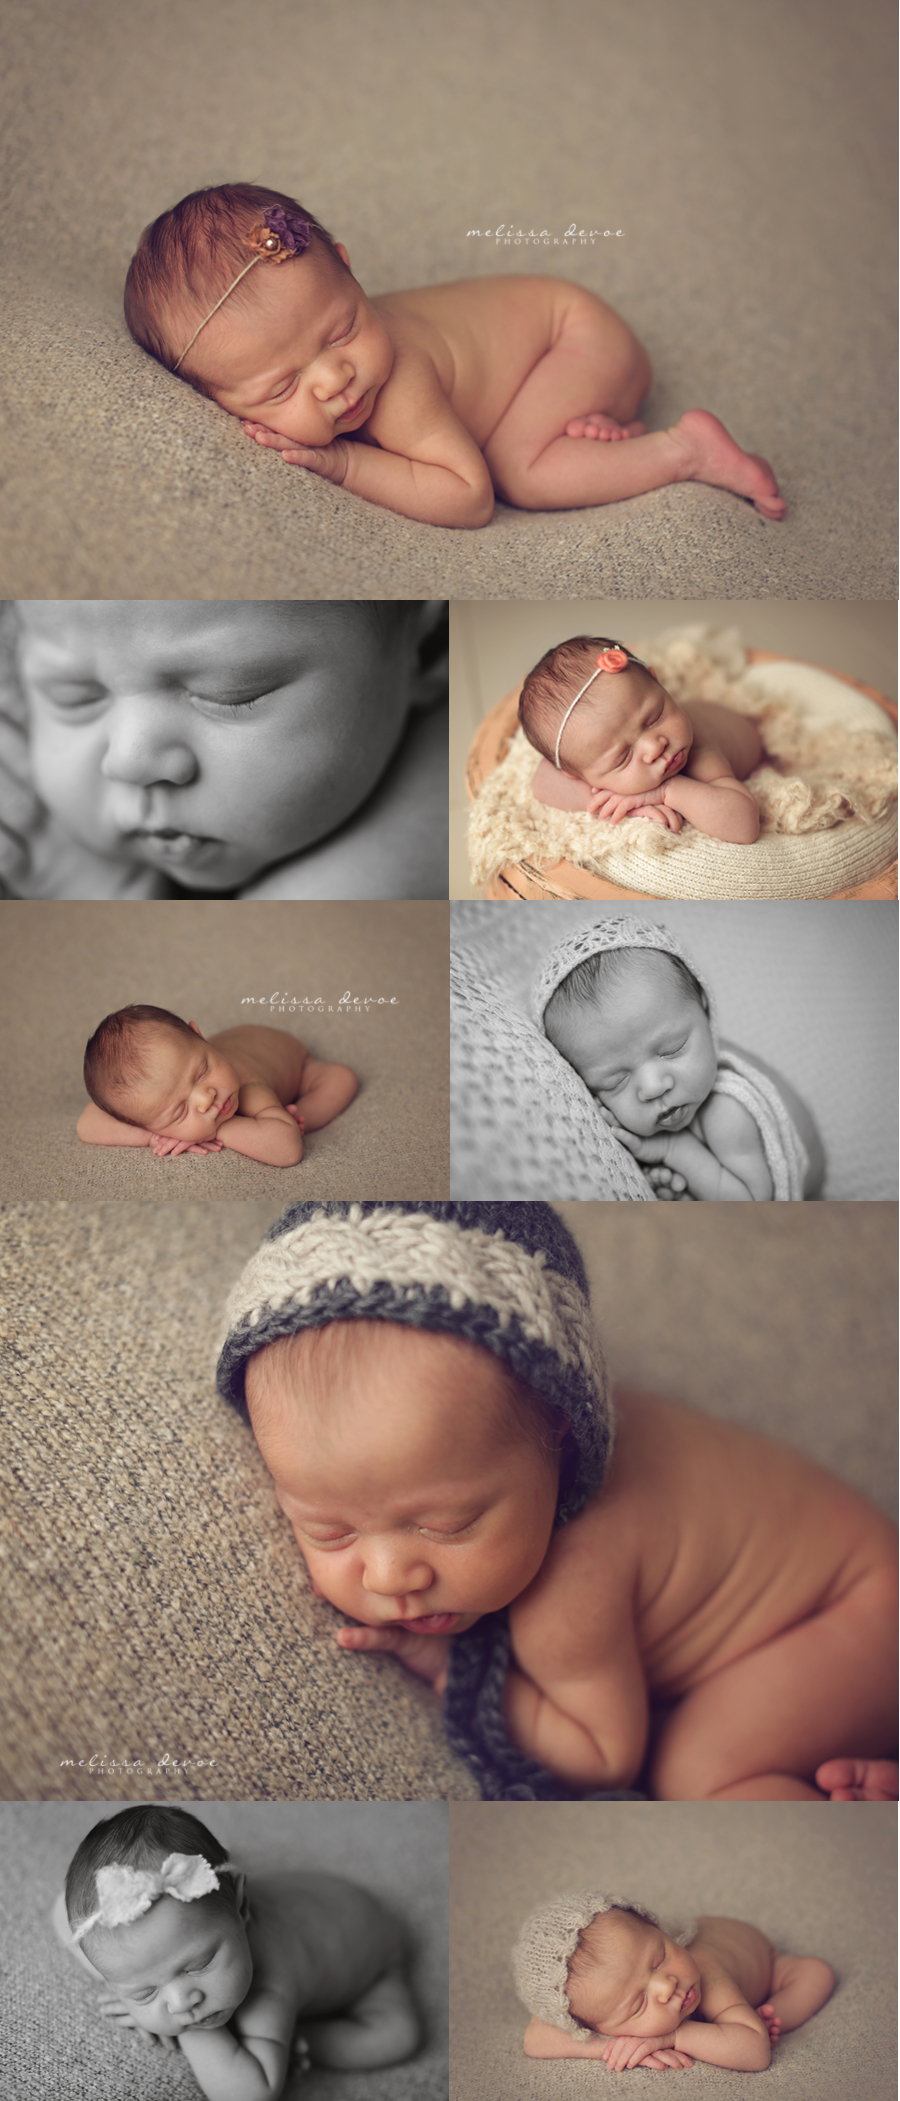 Melissa DeVoe Best Raleigh Newborn Baby Photographer